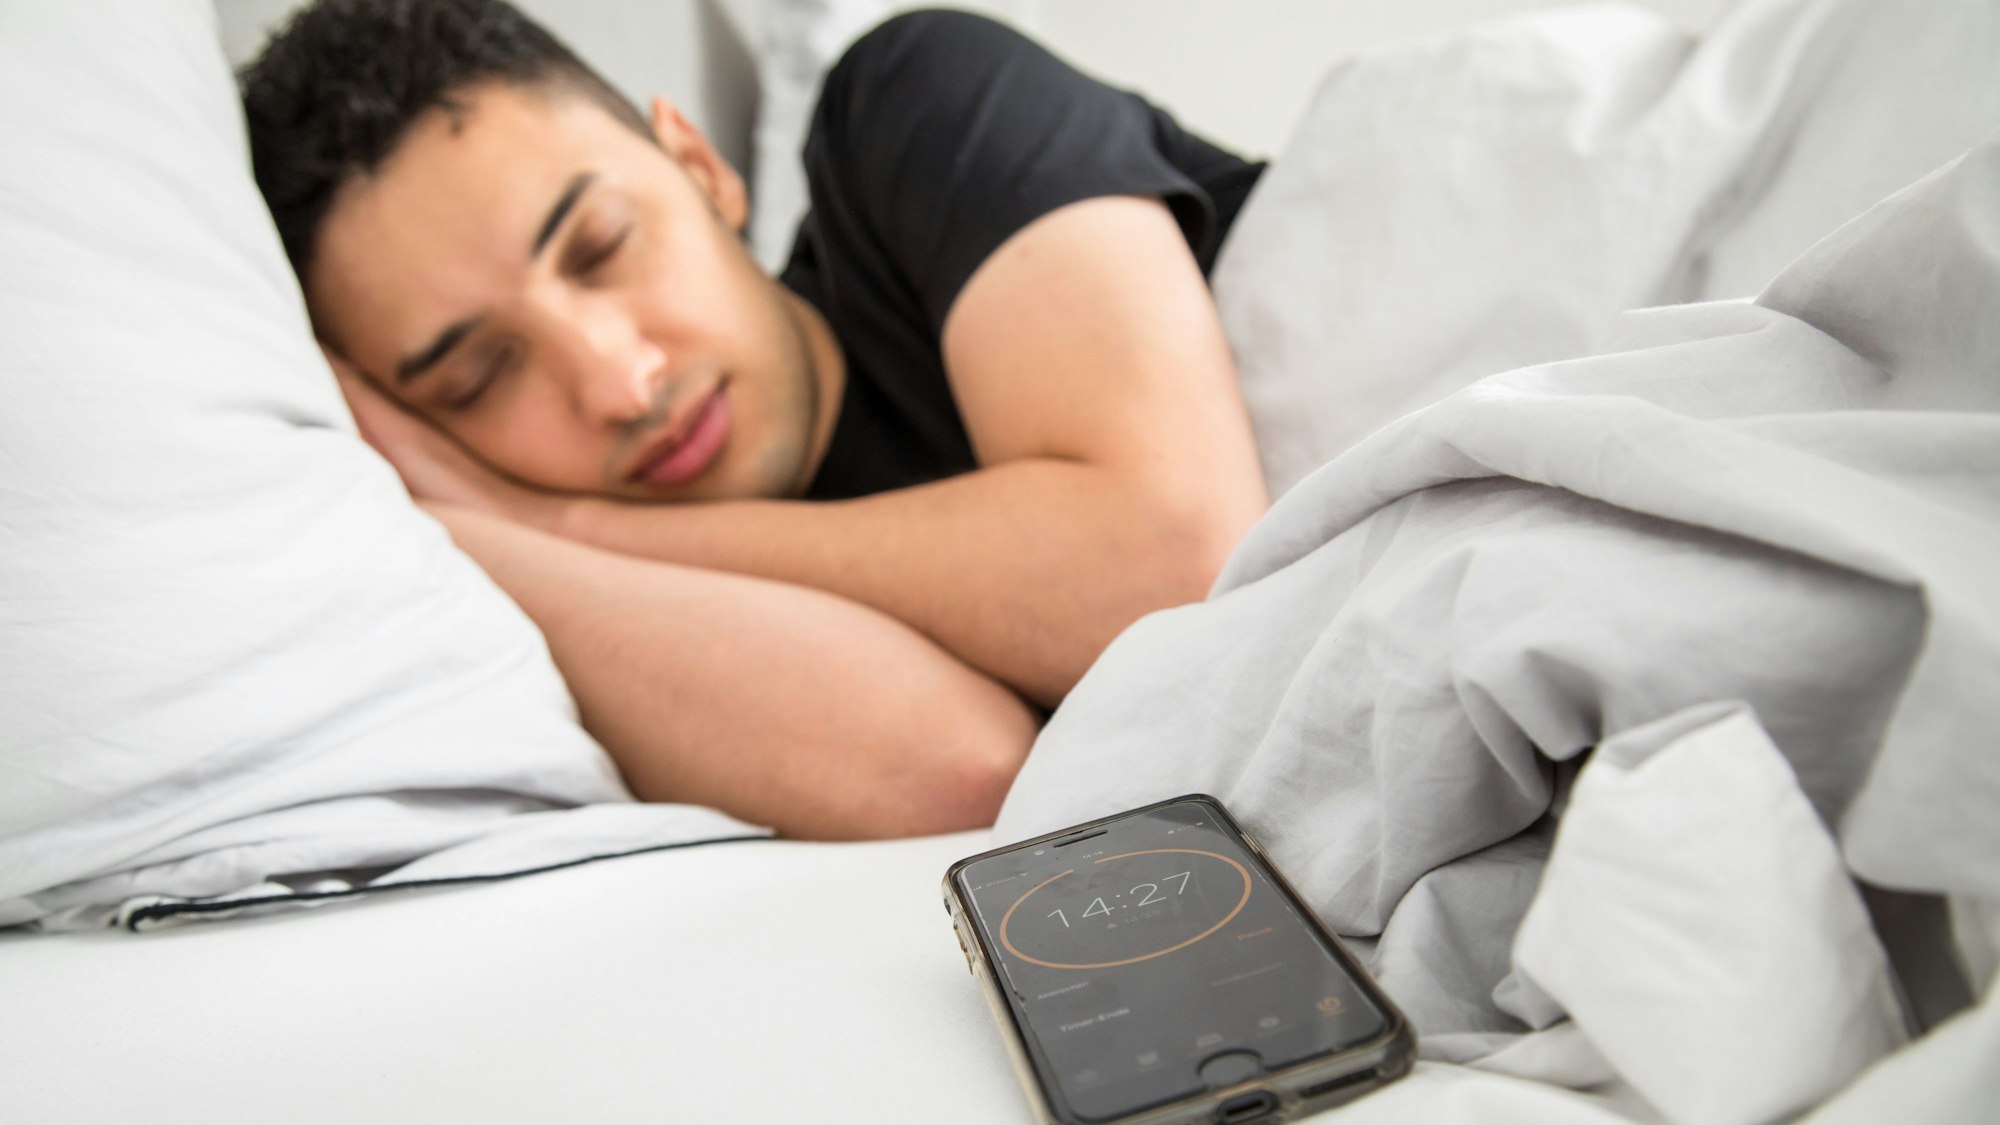 Ein junger Mann schläft im Bett, im Vordergrund ist sein Smartphone mit gestelltem Timer zu sehen.